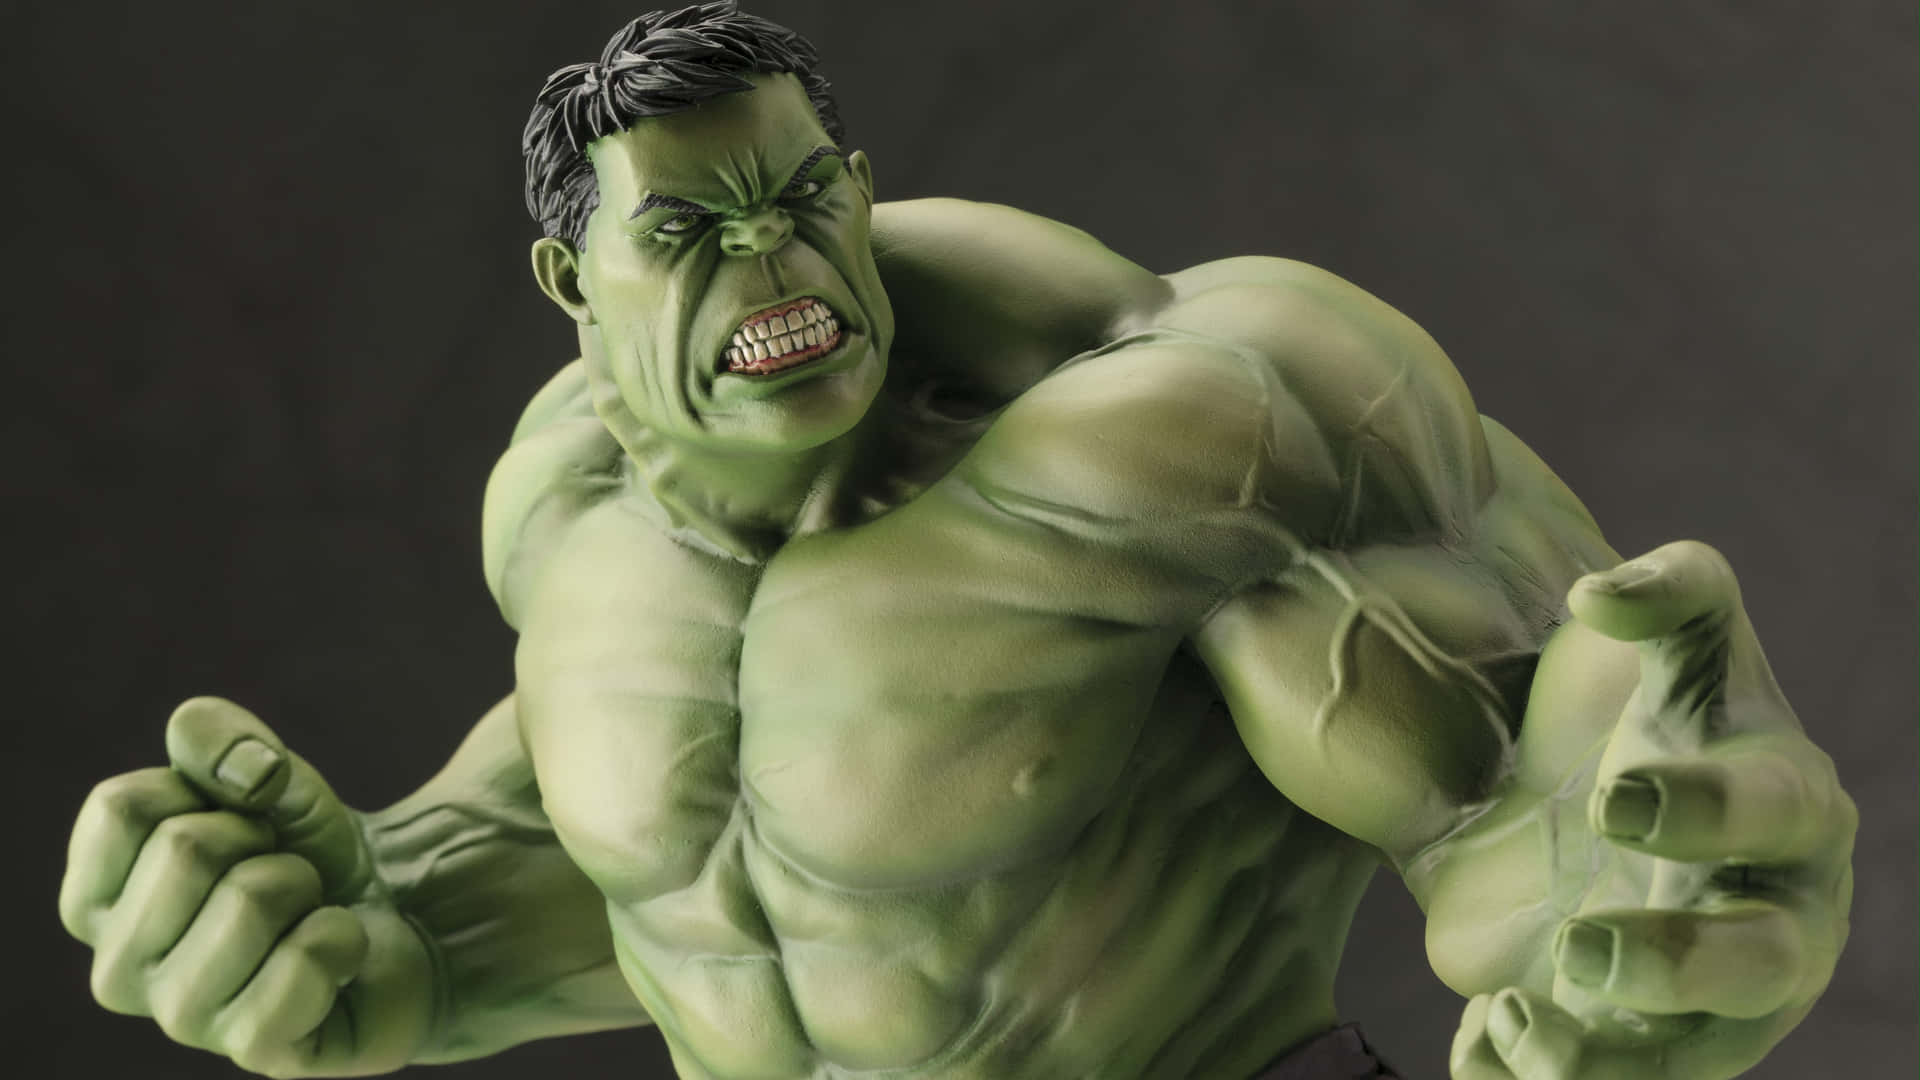 Derunglaubliche Hulk Kämpft Gegen Das Böse.